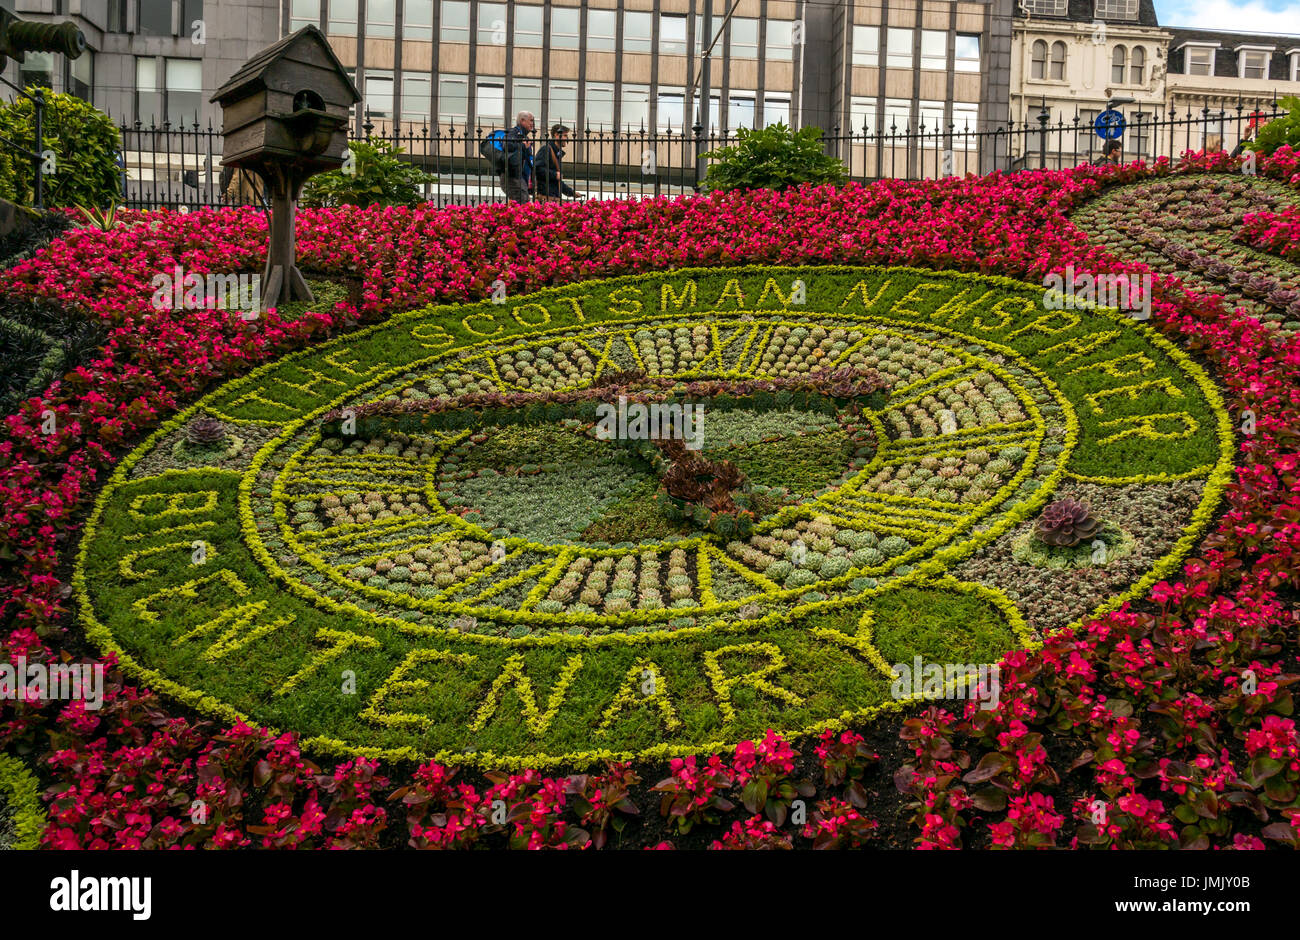 Stadtzentrum von Edinburgh Floral Clock, älteste Uhr in die Welt neu erstellt jedes Jahr, im Jahr 2017 zum Gedenken an Bicentennial der Zeitung The Scotsman Stockfoto